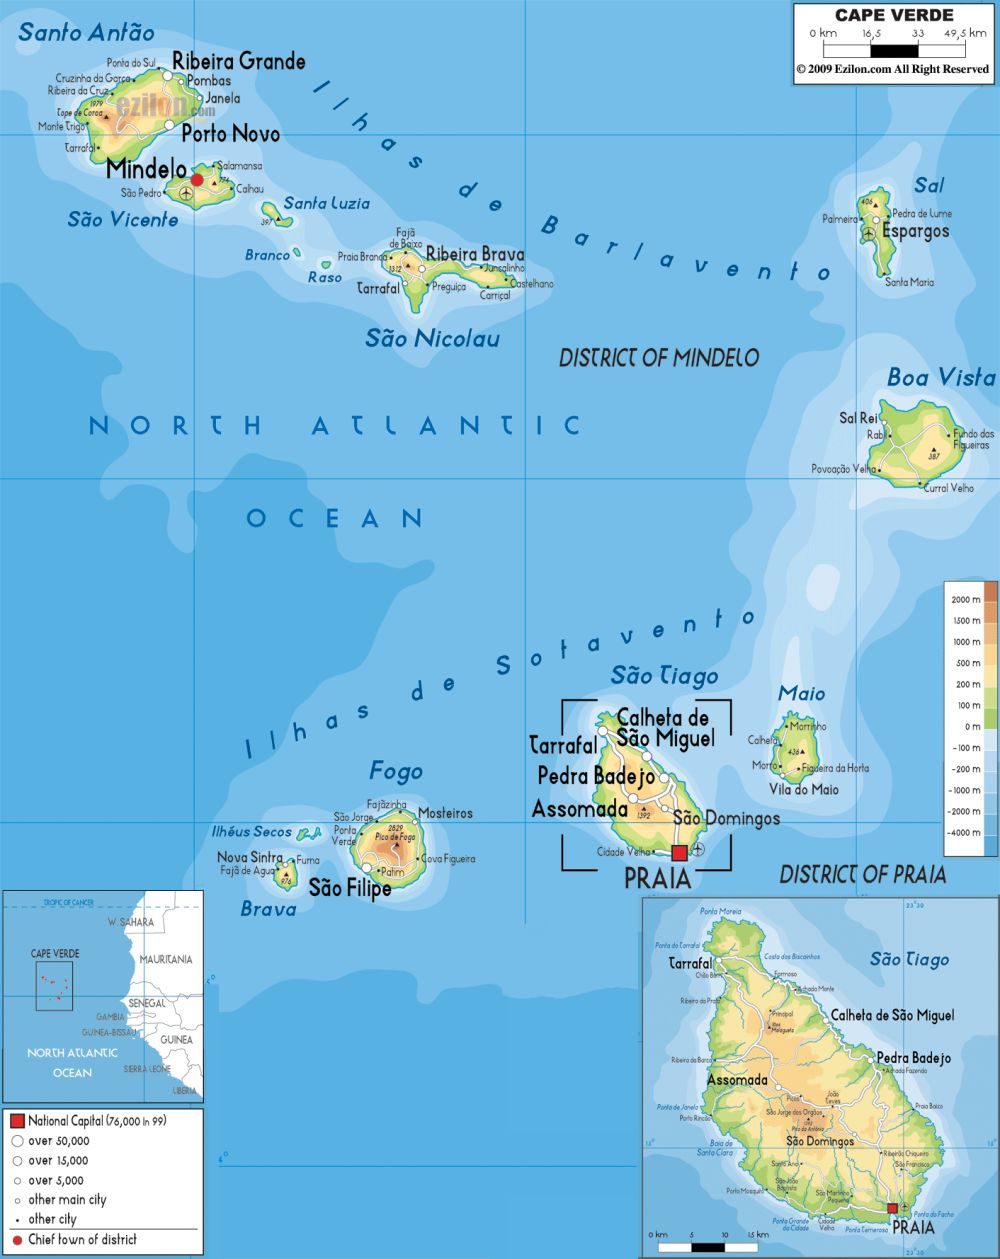 [Update] Bản đồ hành chính đất nước Cabo Verde (Cabo Verde Map) phóng to năm 2022 17